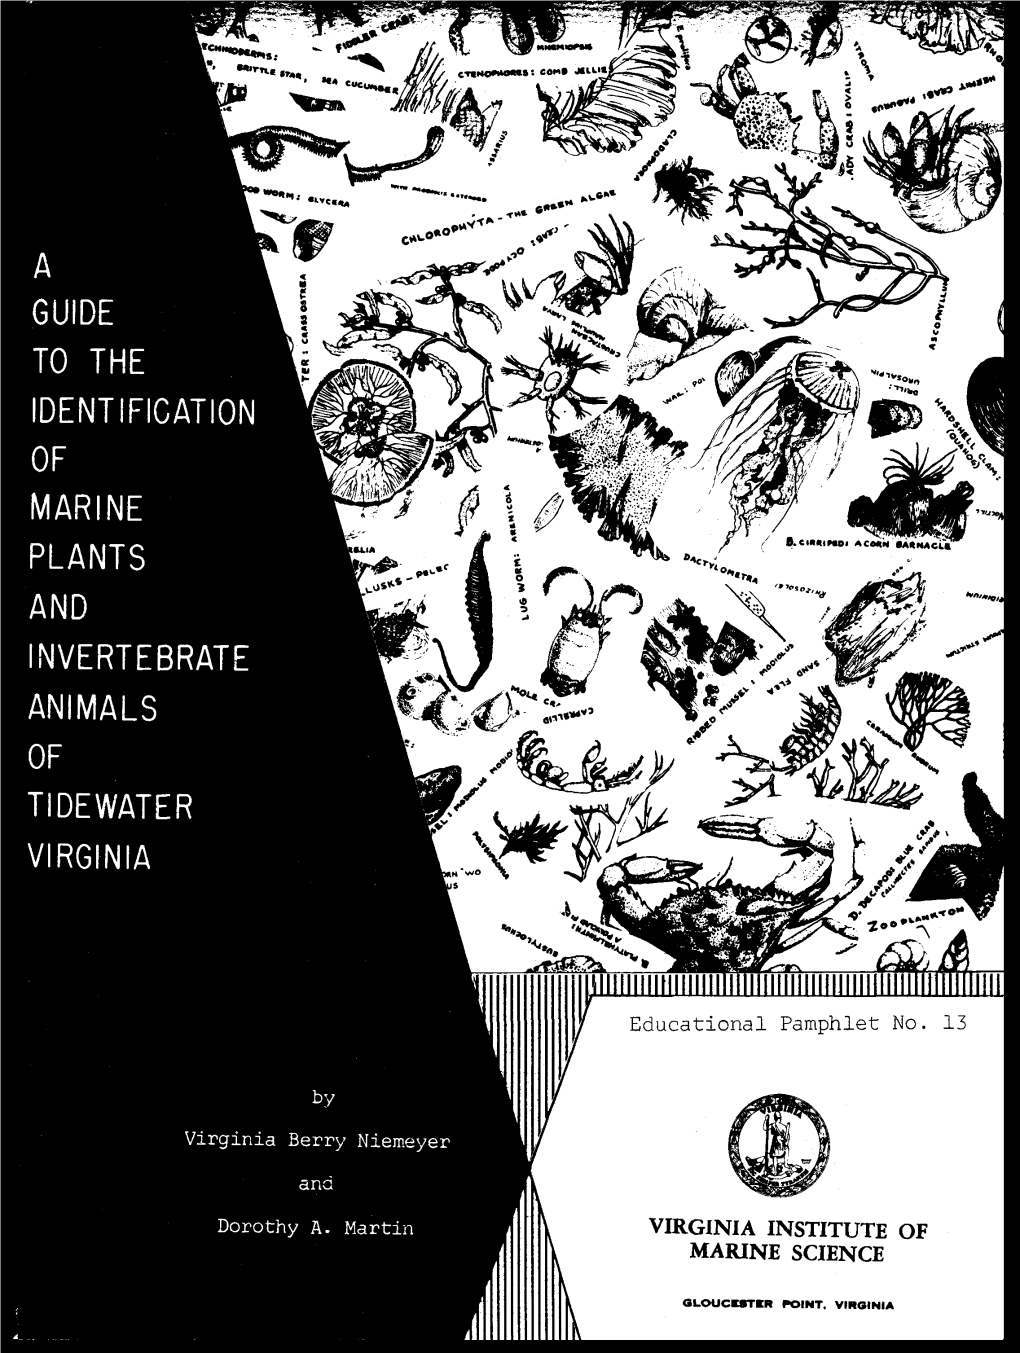 Virginia Institute of Marine Science